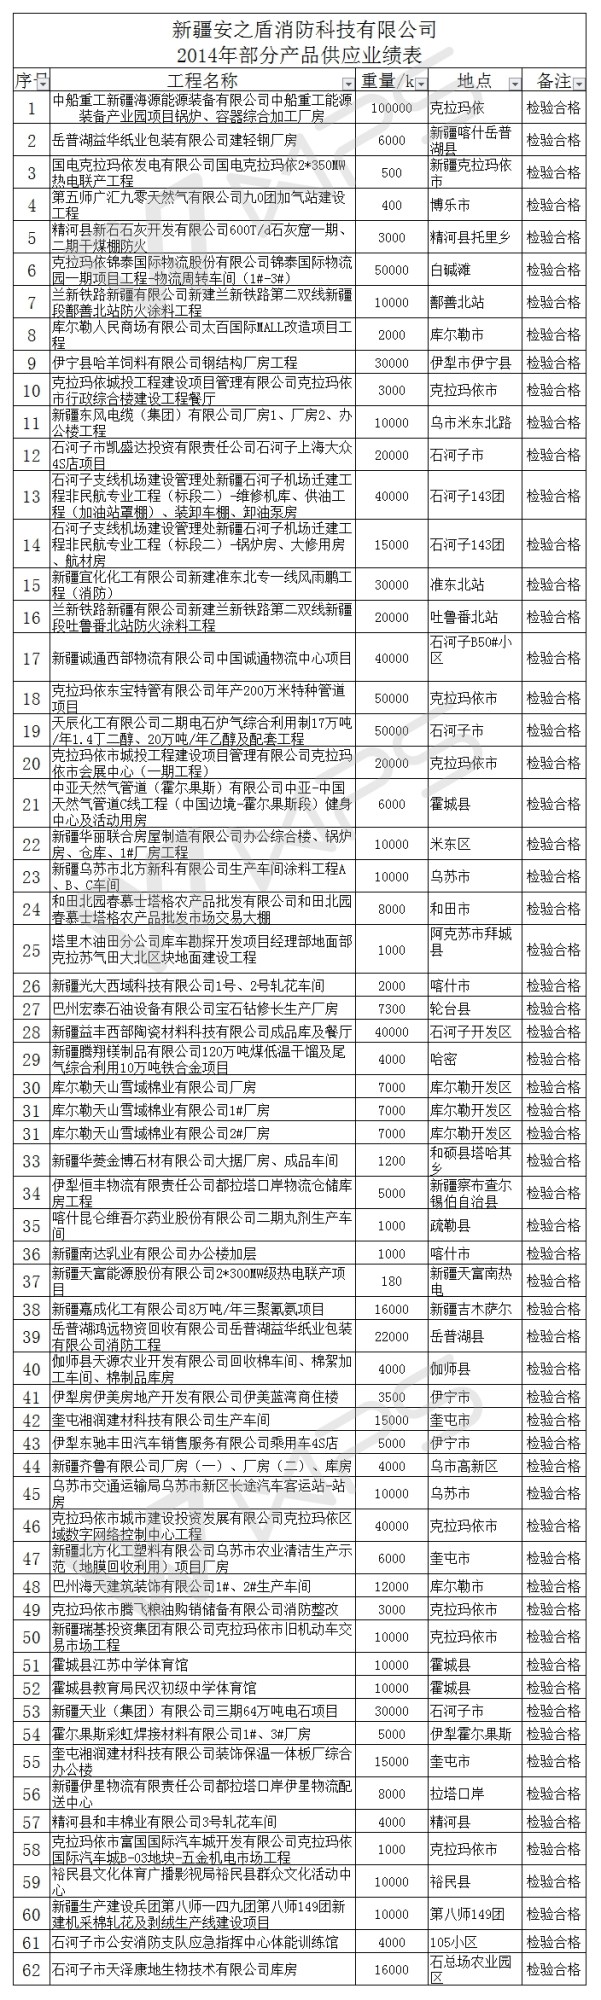 新疆安之盾消防科技有限公司 2014年部分產品供應業績表